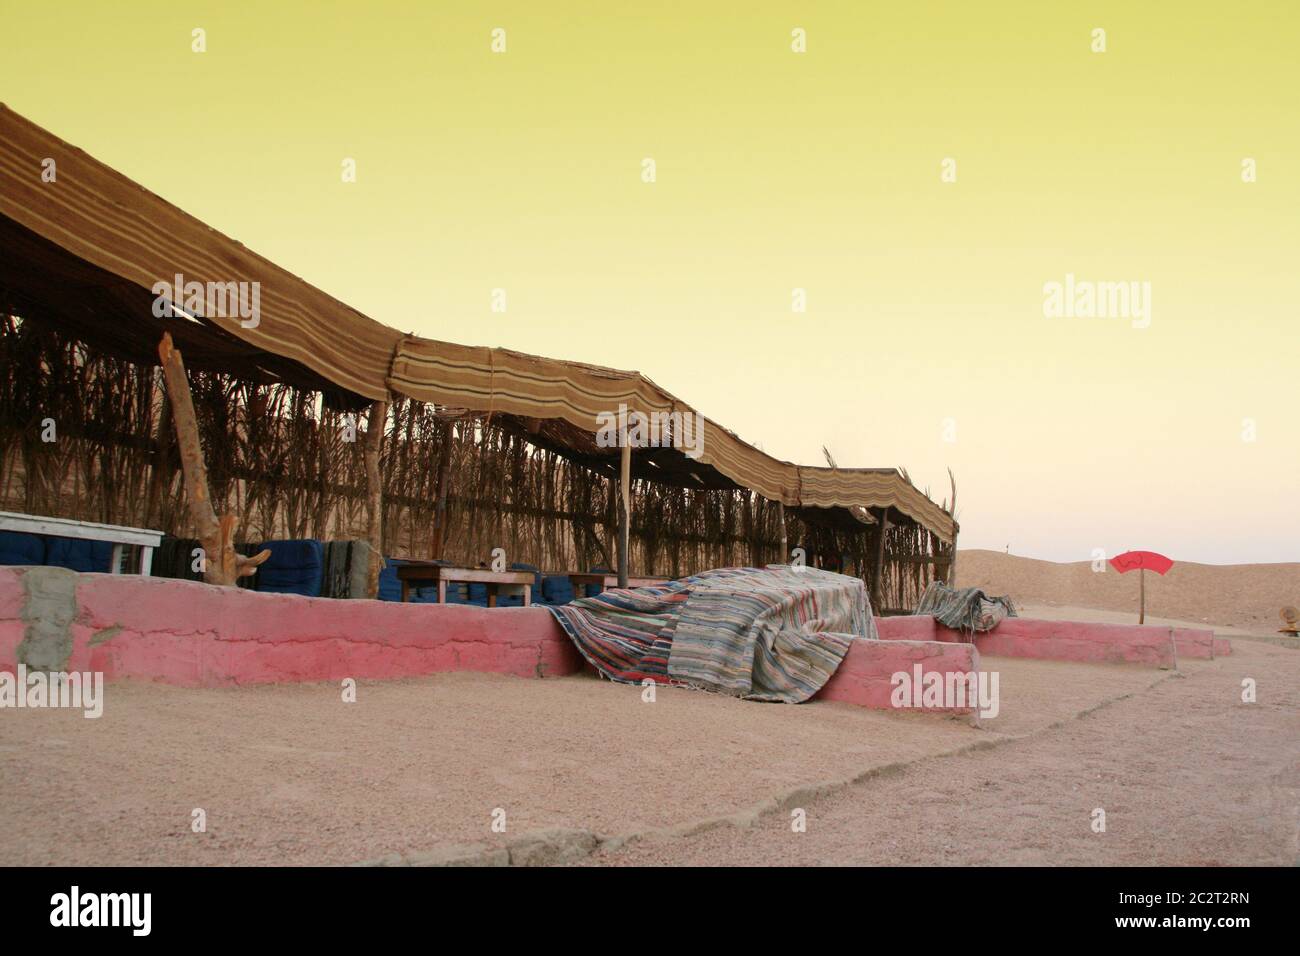 Bedouin house in African desert Stock Photo